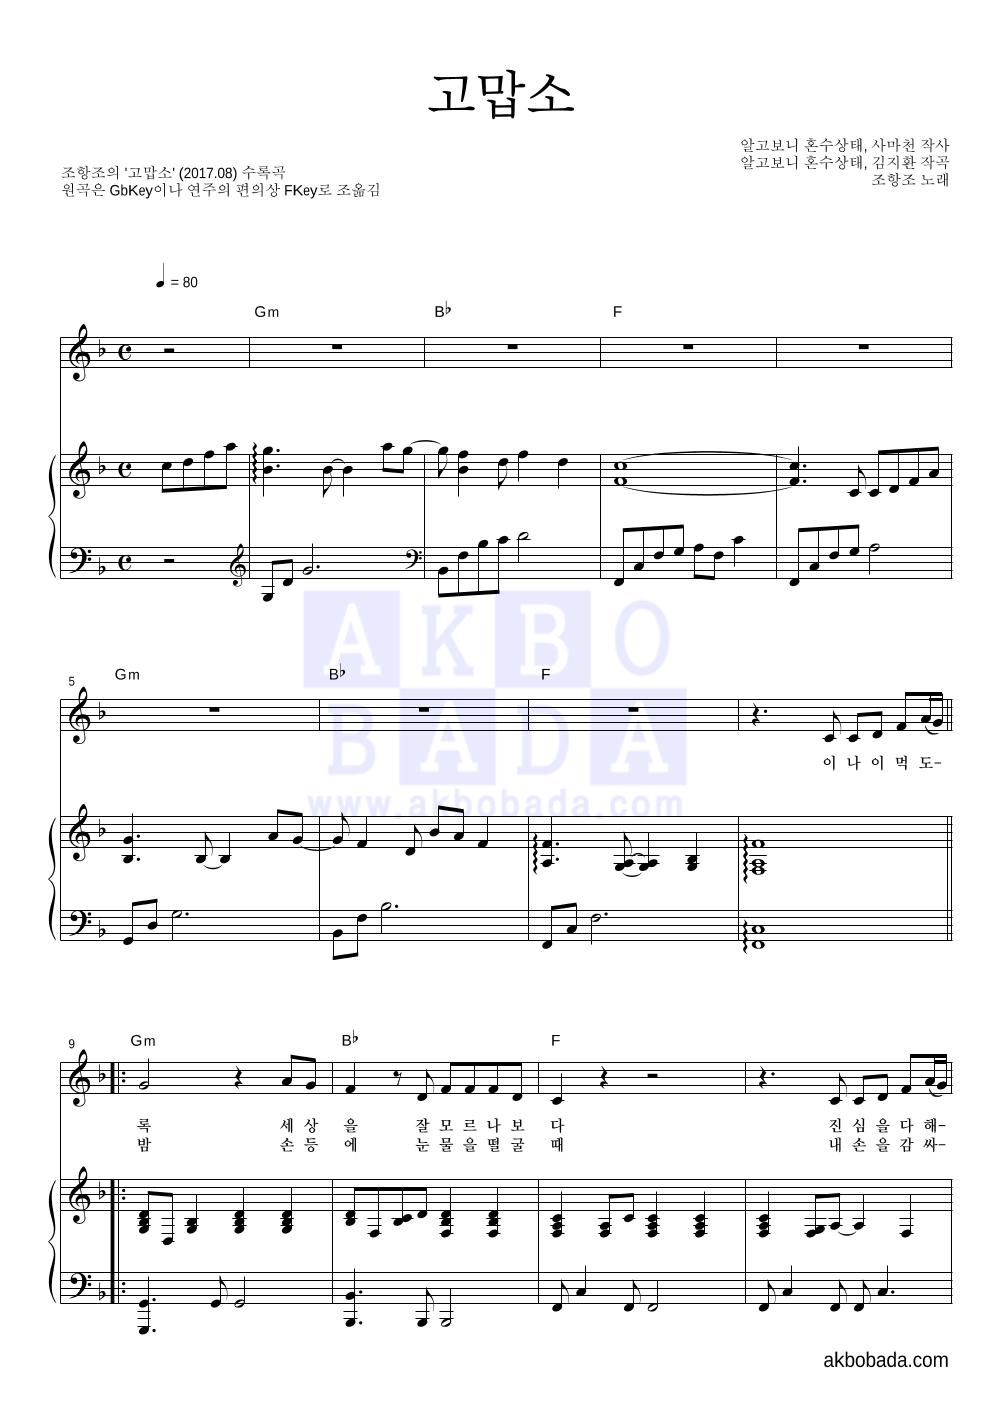 조항조 - 고맙소 피아노 3단 악보 